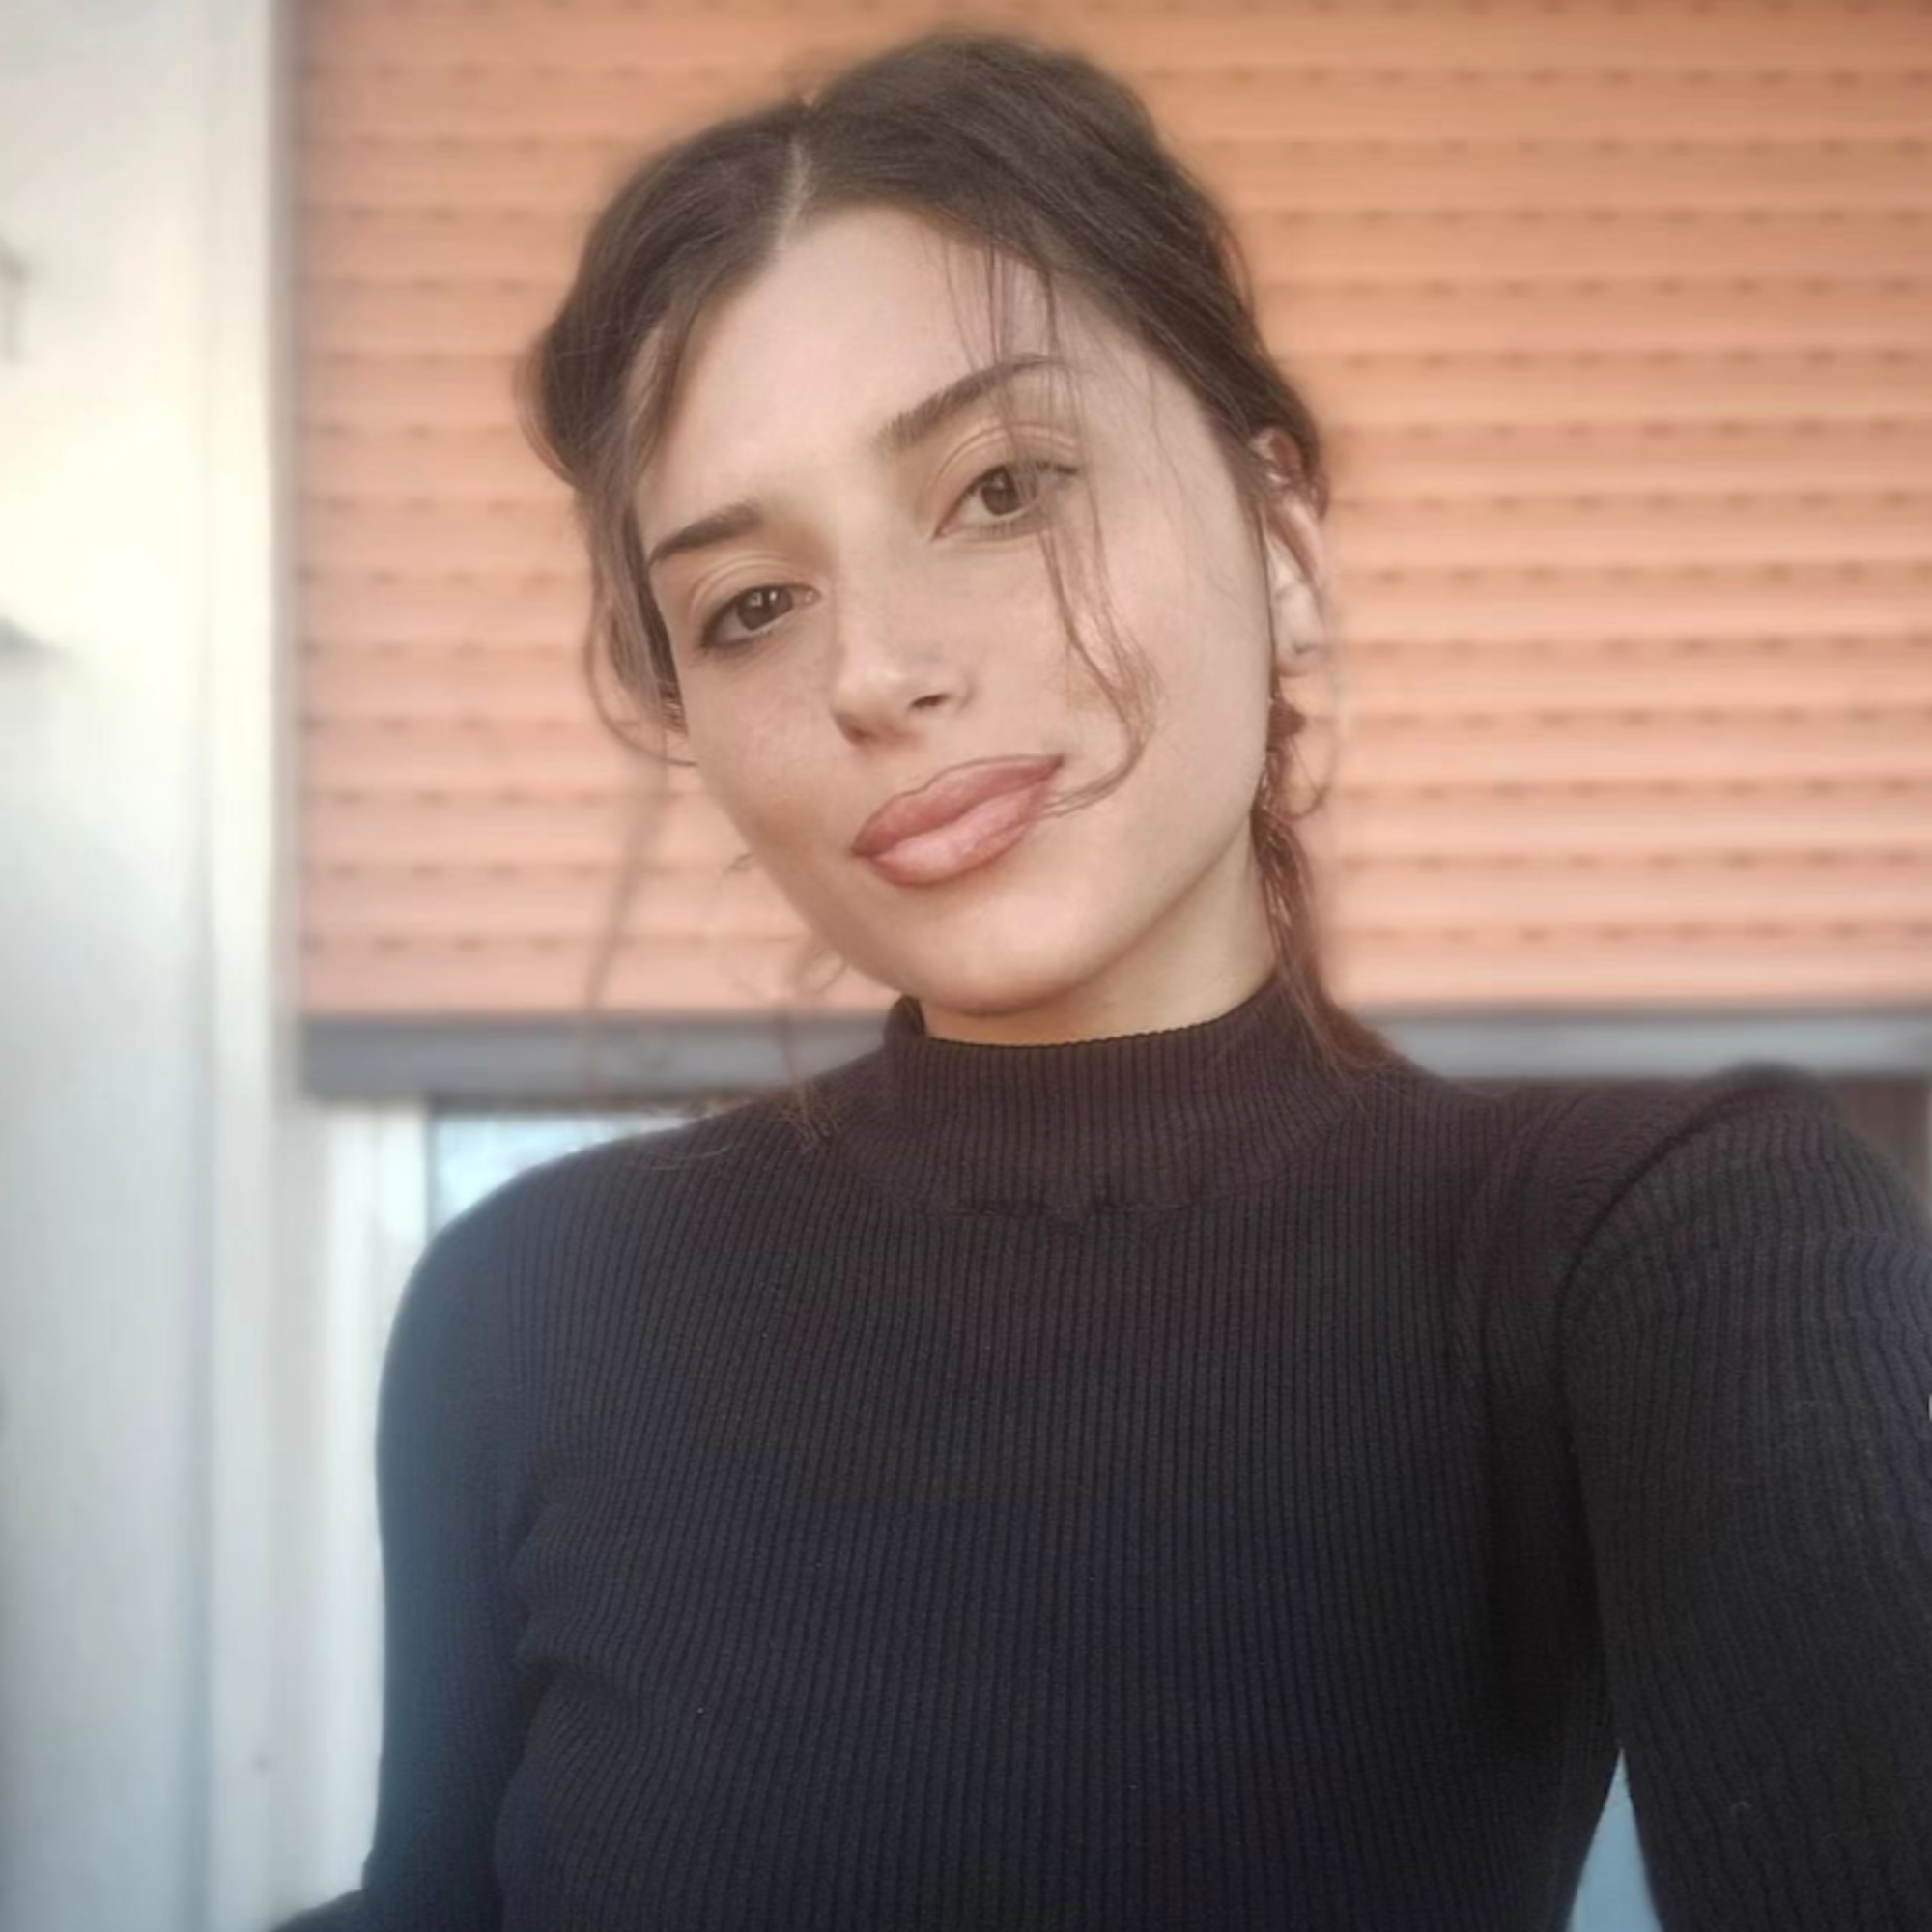 Die 25-jährige Clelia Ditano ist in einen Fahrstuhlschacht gestürzt und ums Leben gekommen. Das Foto wurde am 5. April auf Instagram hochgeladen.